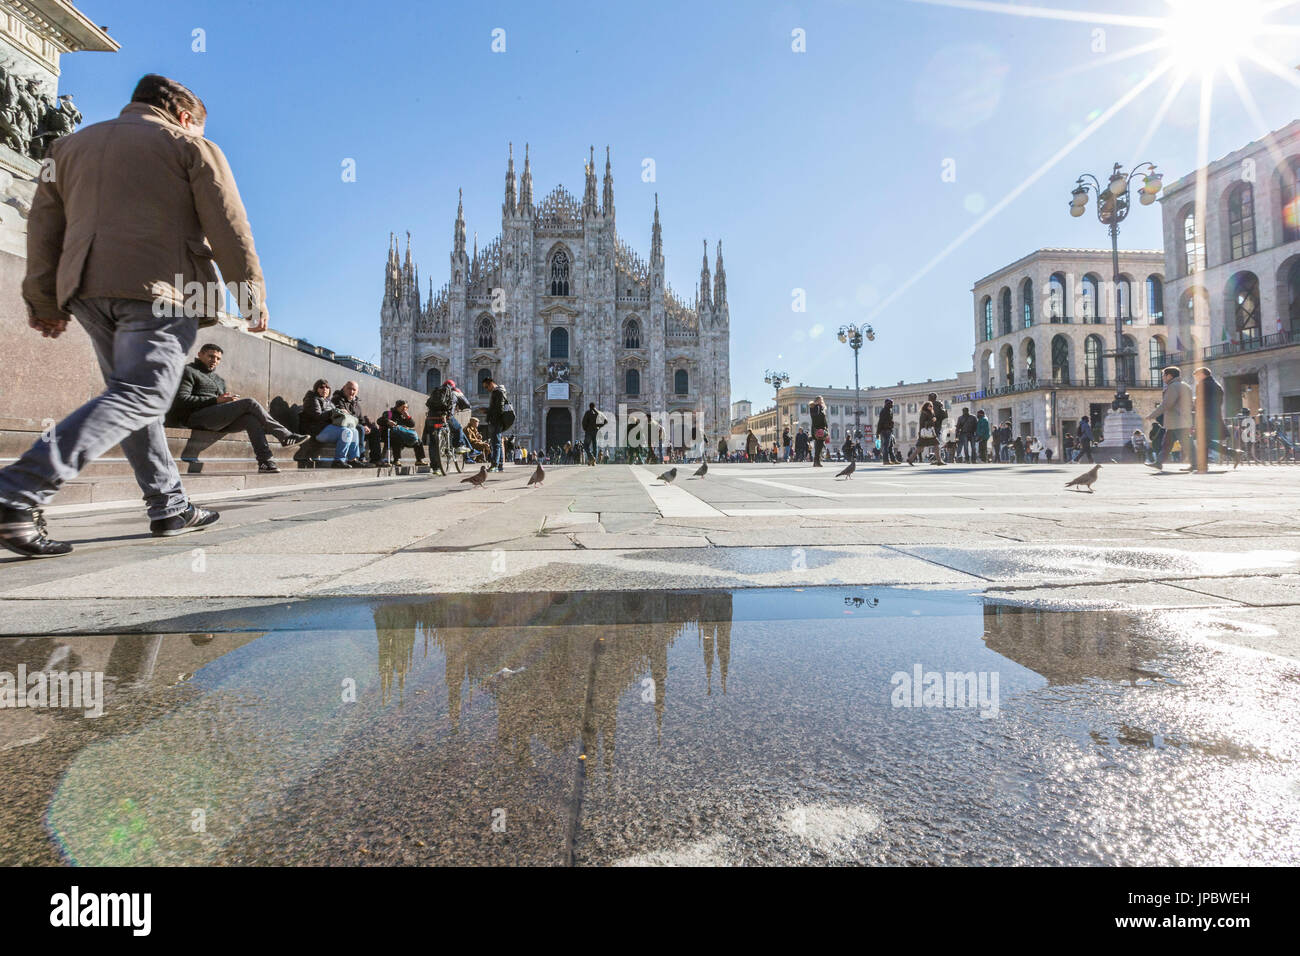 Vue sur la place et la cathédrale gothique de l'icône de Milan Lombardie Italie Europe Banque D'Images